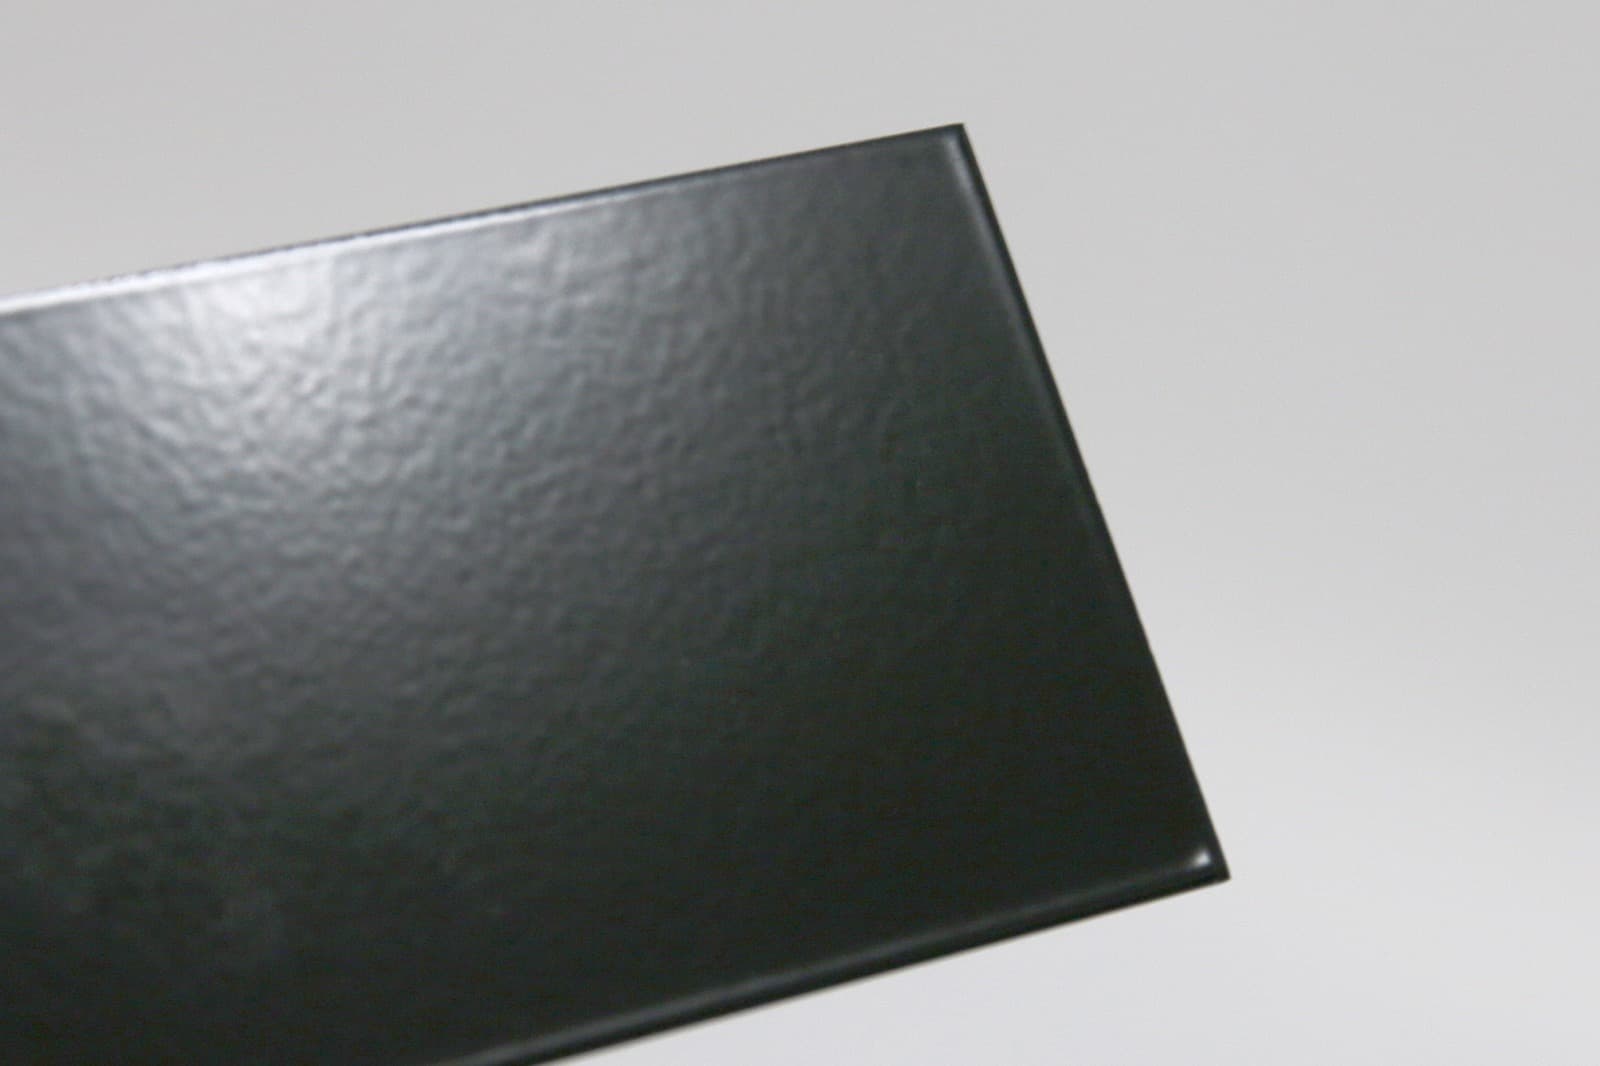 キューブ型レンジフード 照明なし W450×H600 ブラック KB-KC019-23-G162 質感見本。ツヤがあります